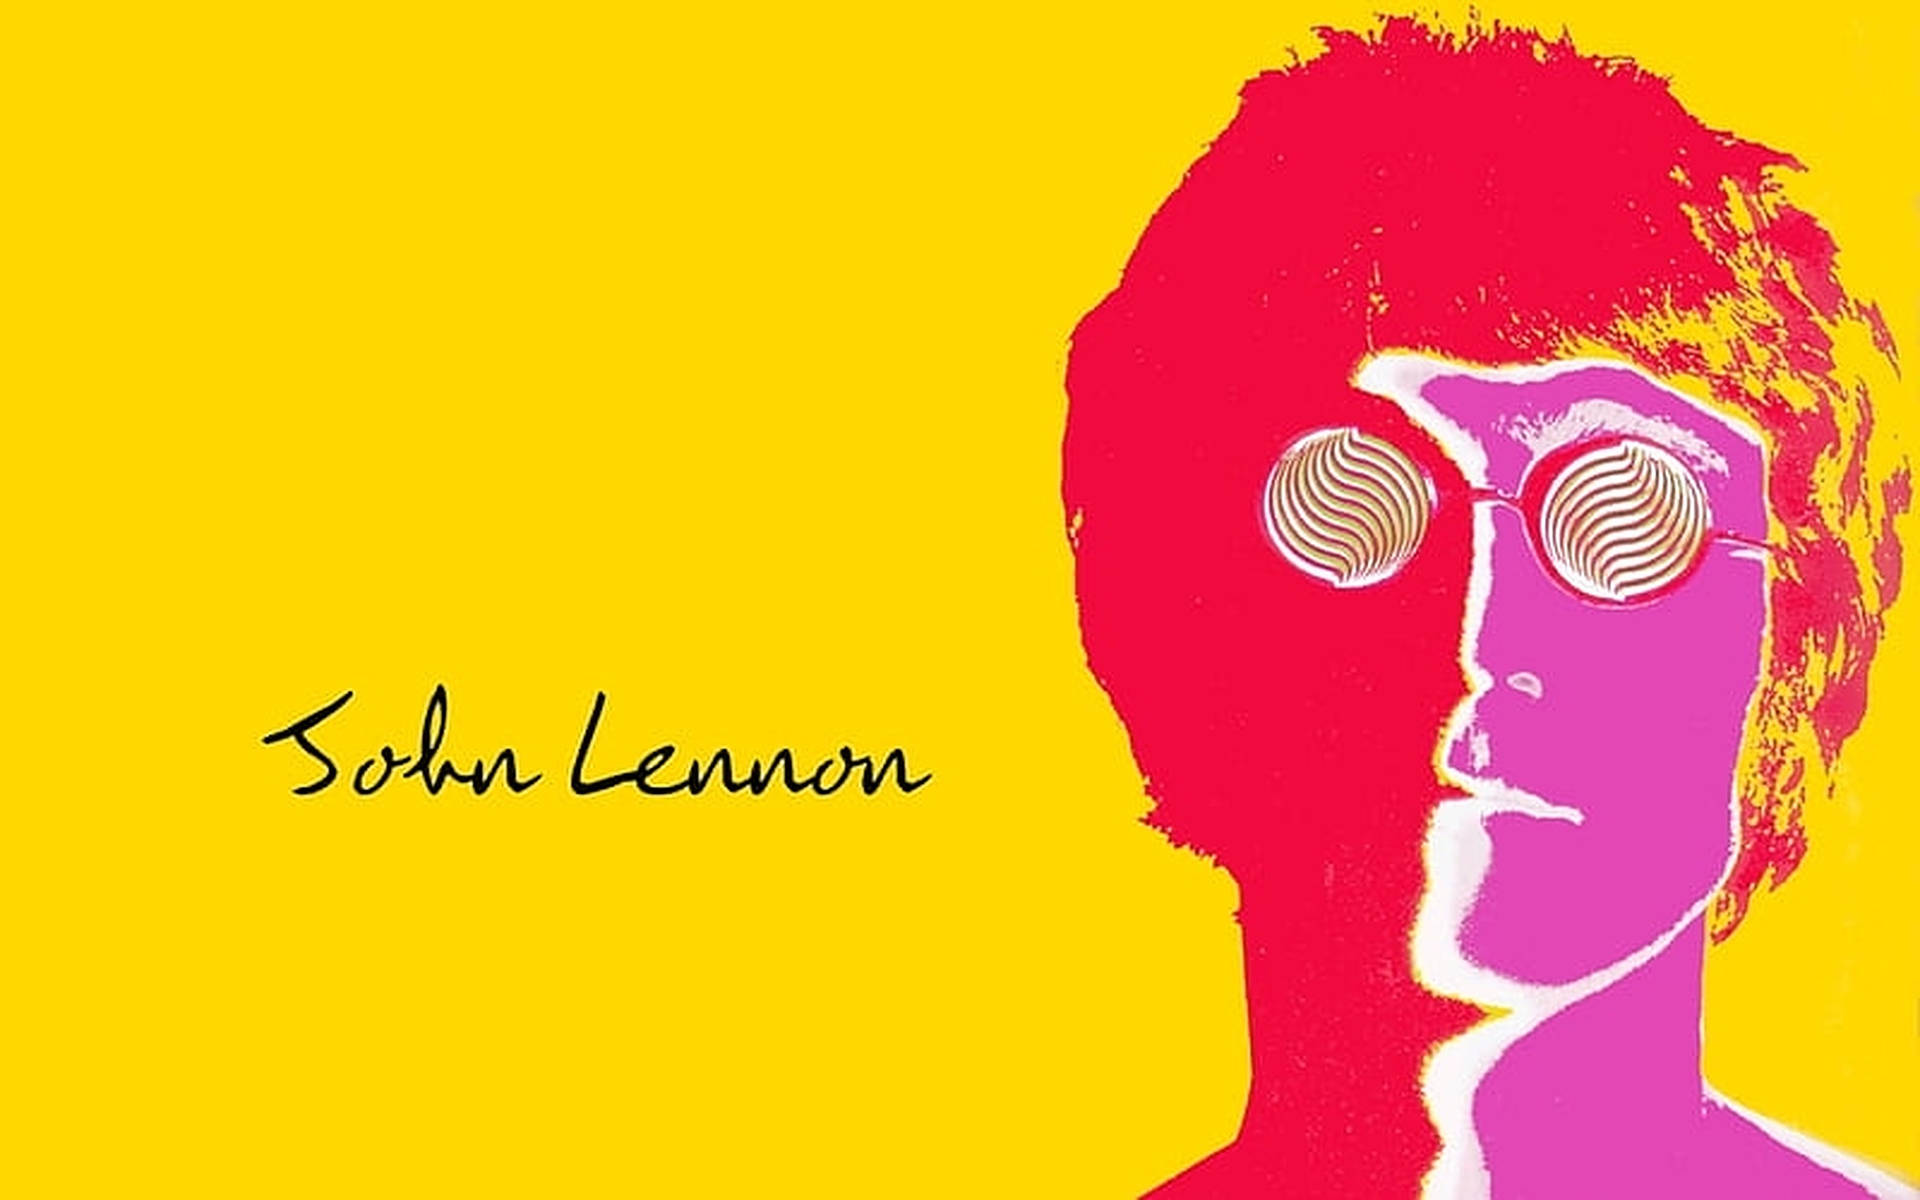 John Lennon Retro Poster